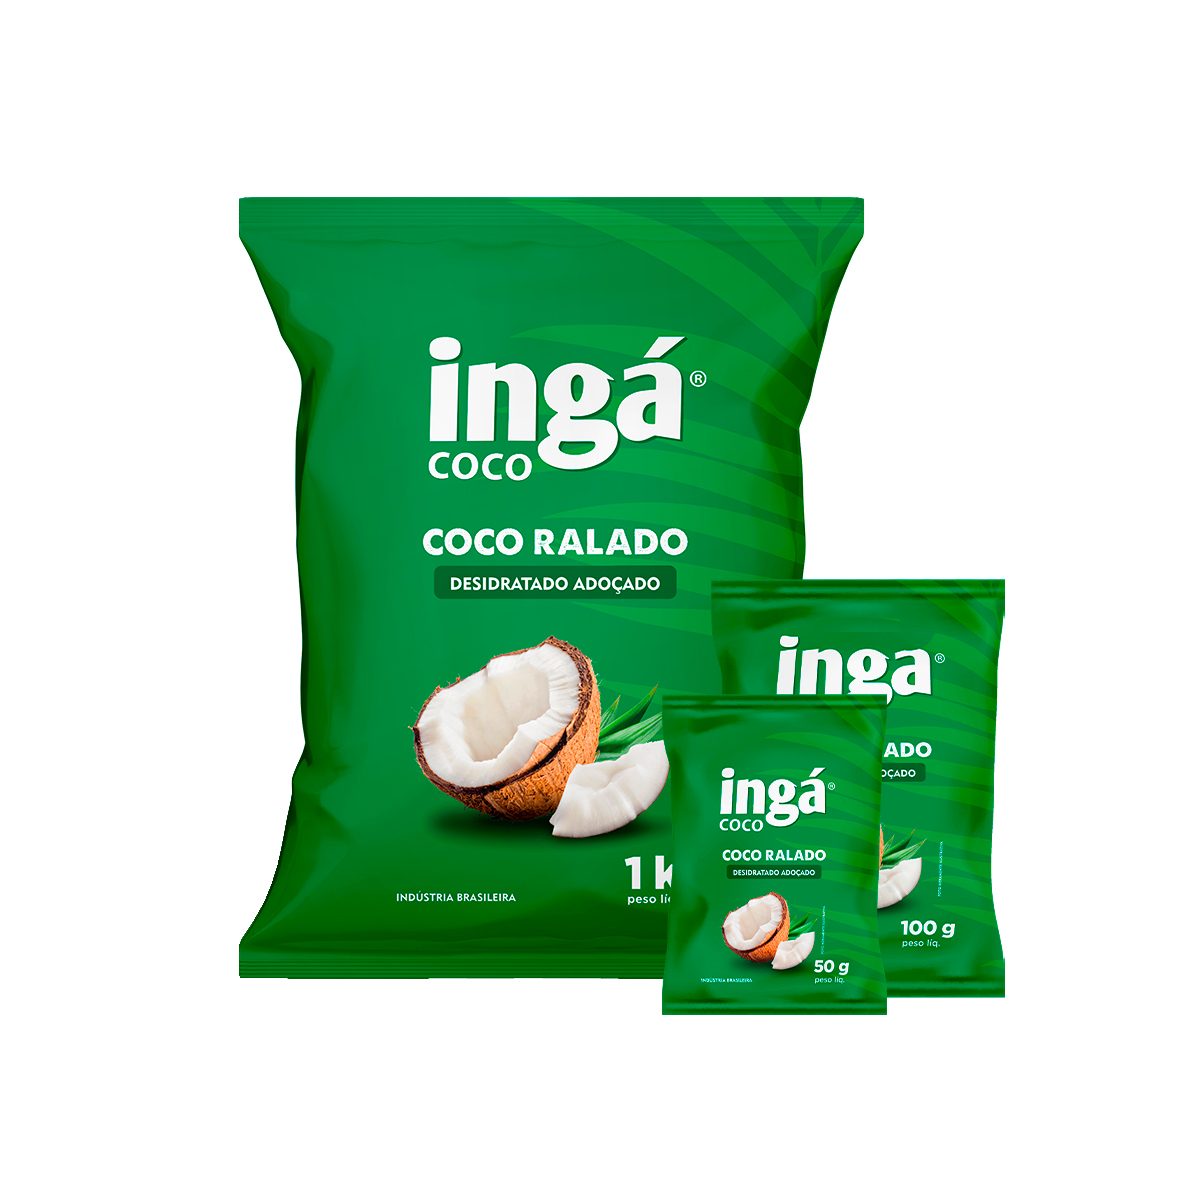 Coco Ralado - Ingá coco